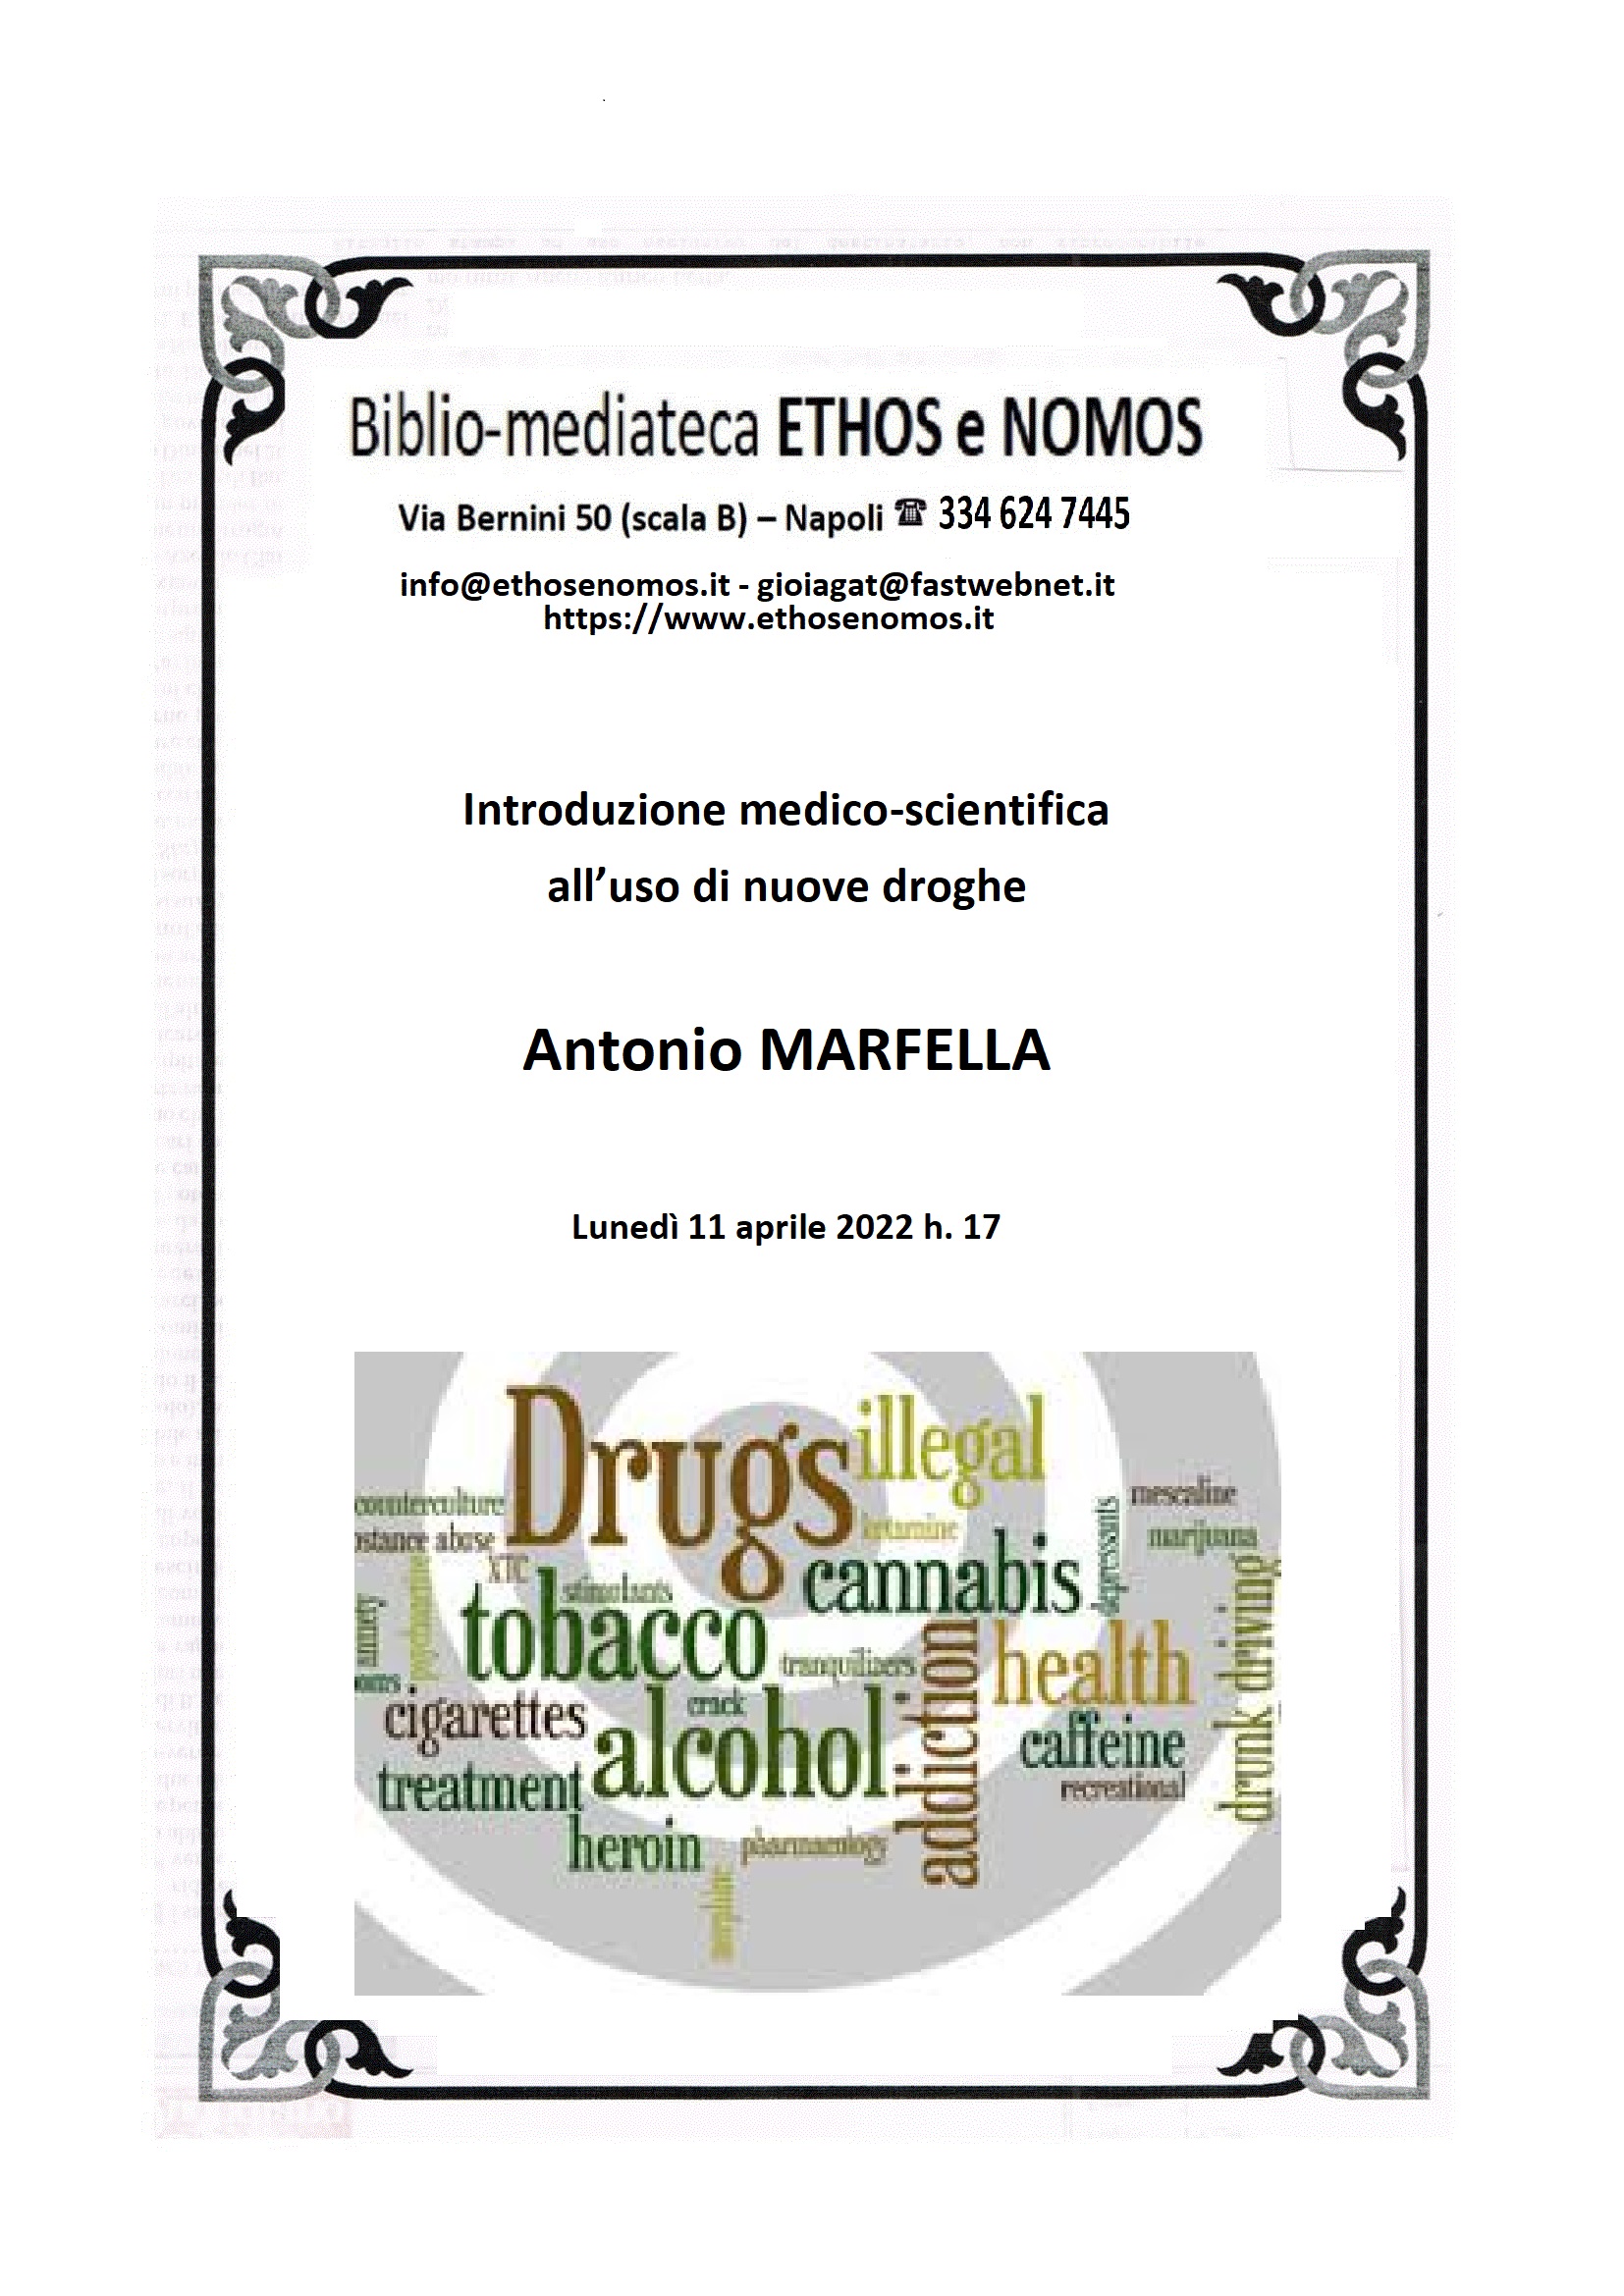 ANTONIO MARFELLA - Introduzione medico-scientifica all'uso delle nuove droghe